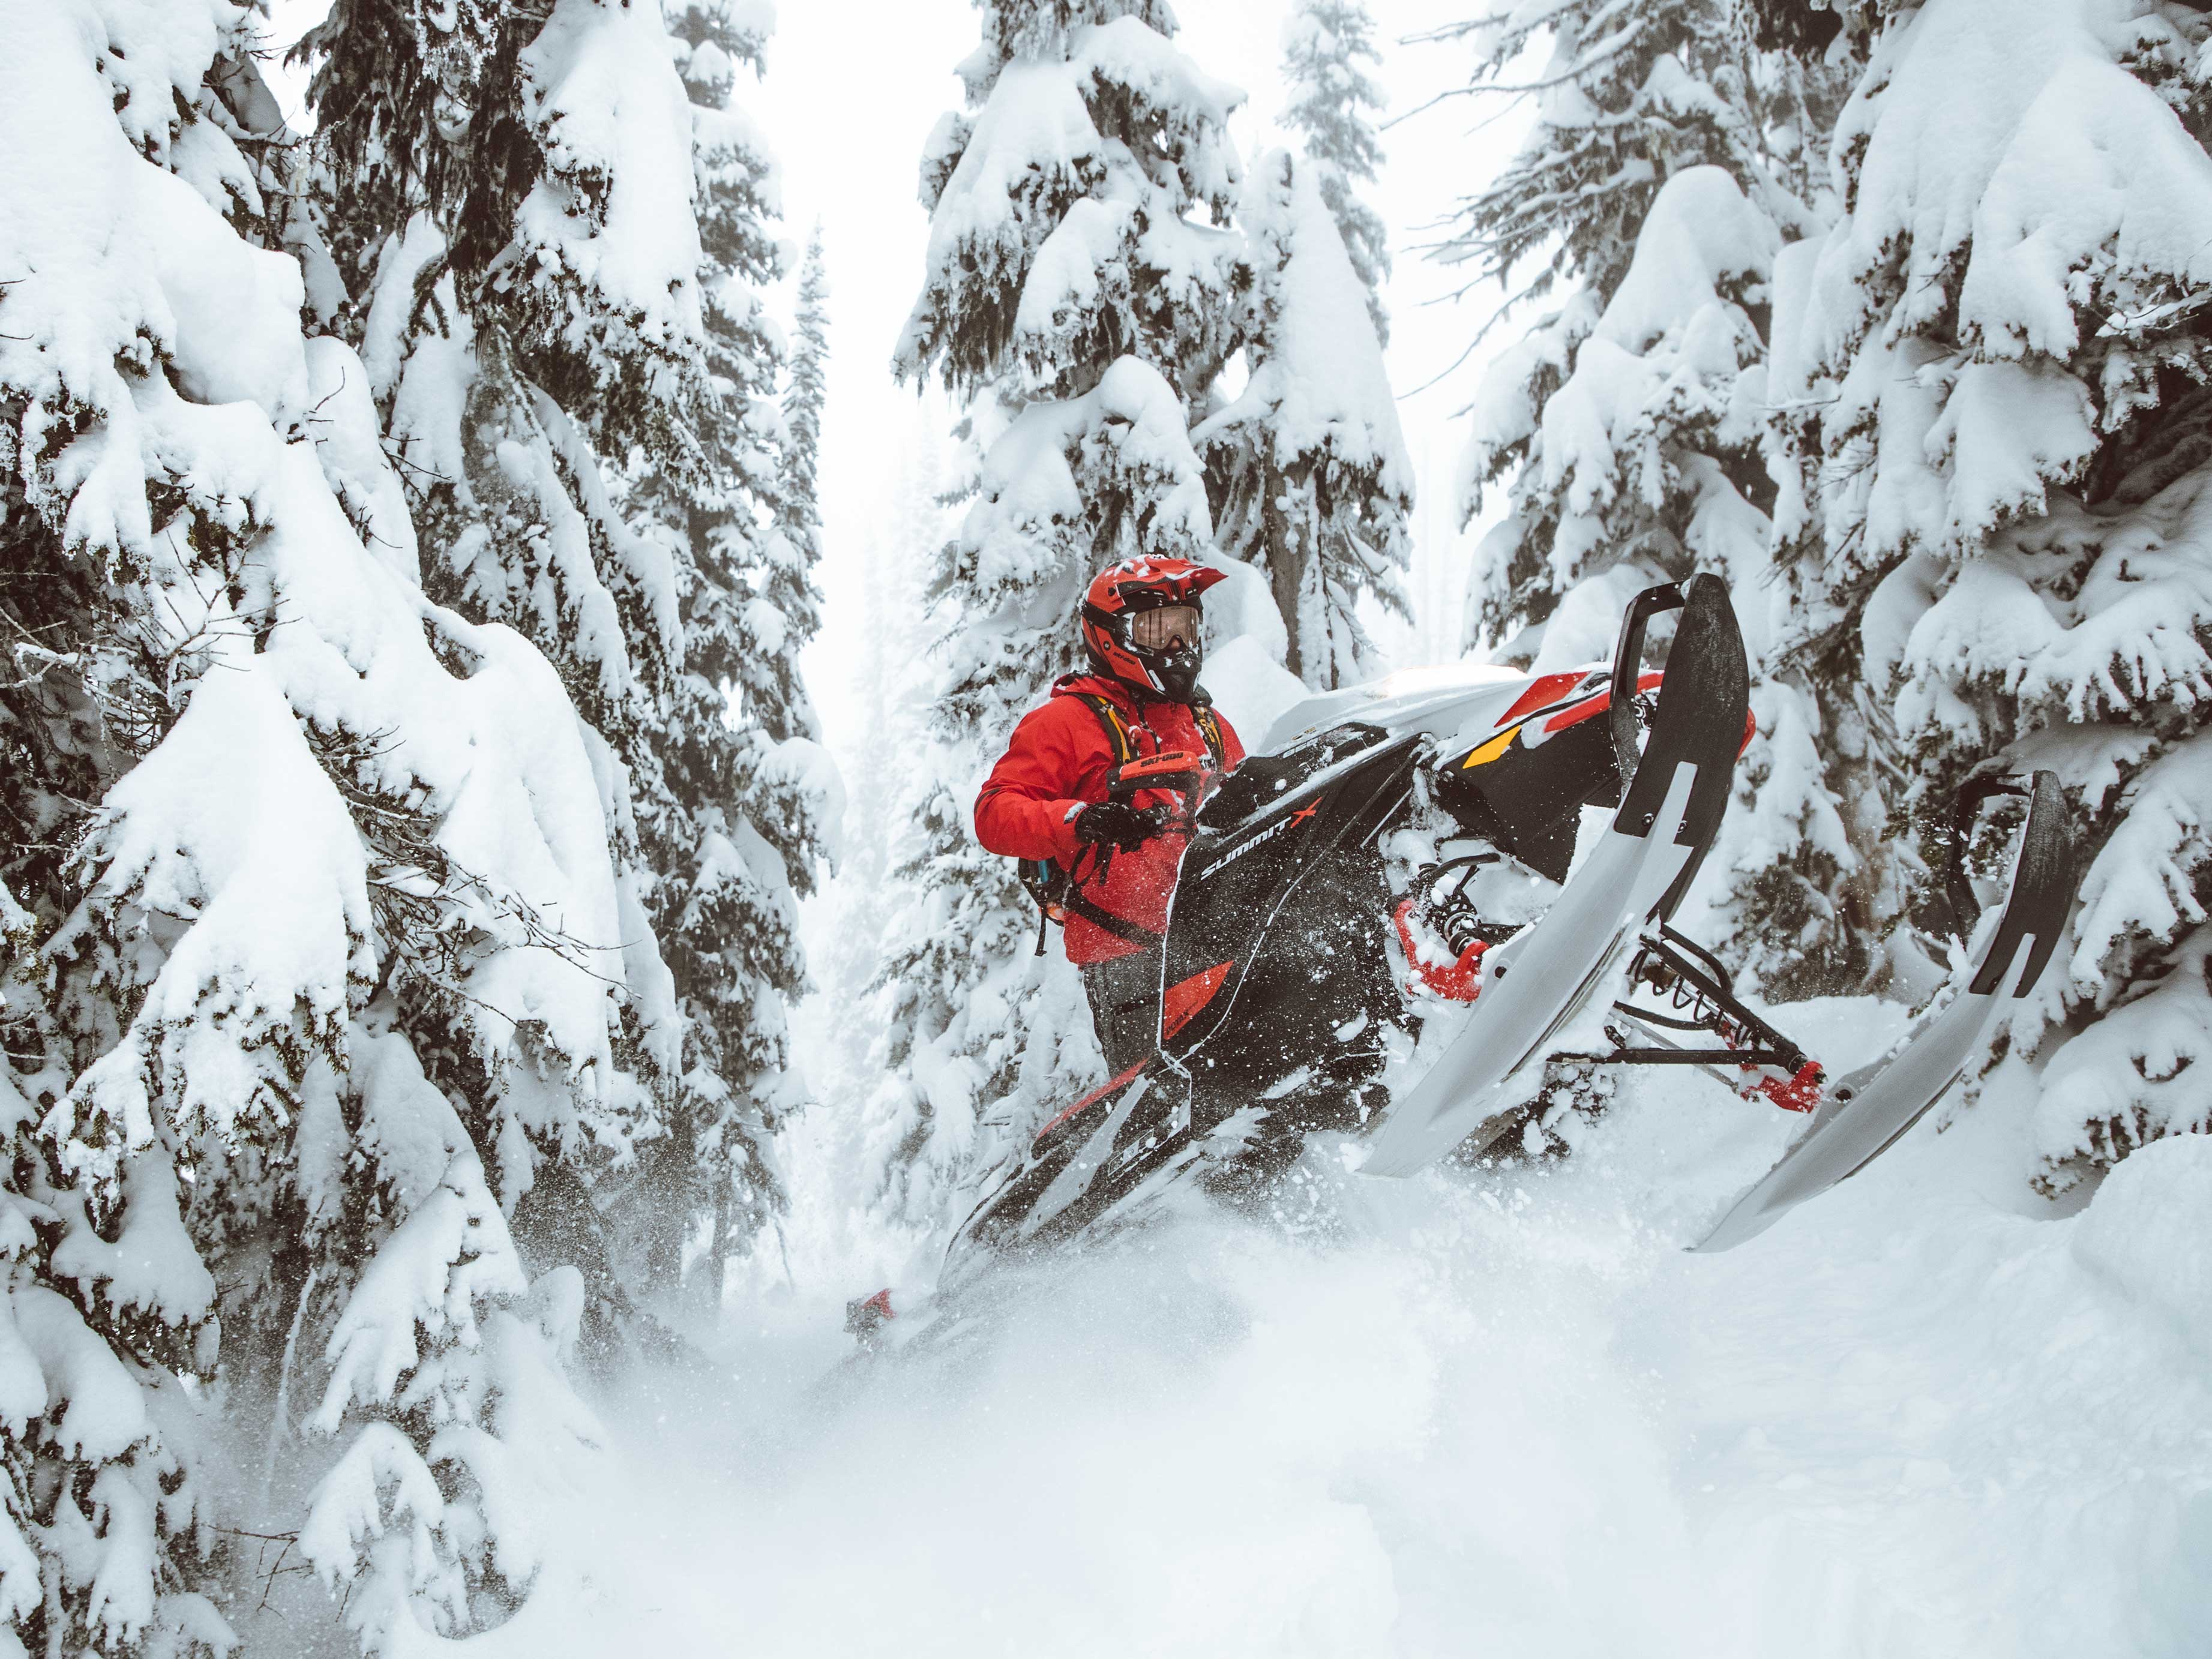 Tony Jenkins sur son Ski-Doo Summit X qui sort de la neige profonde